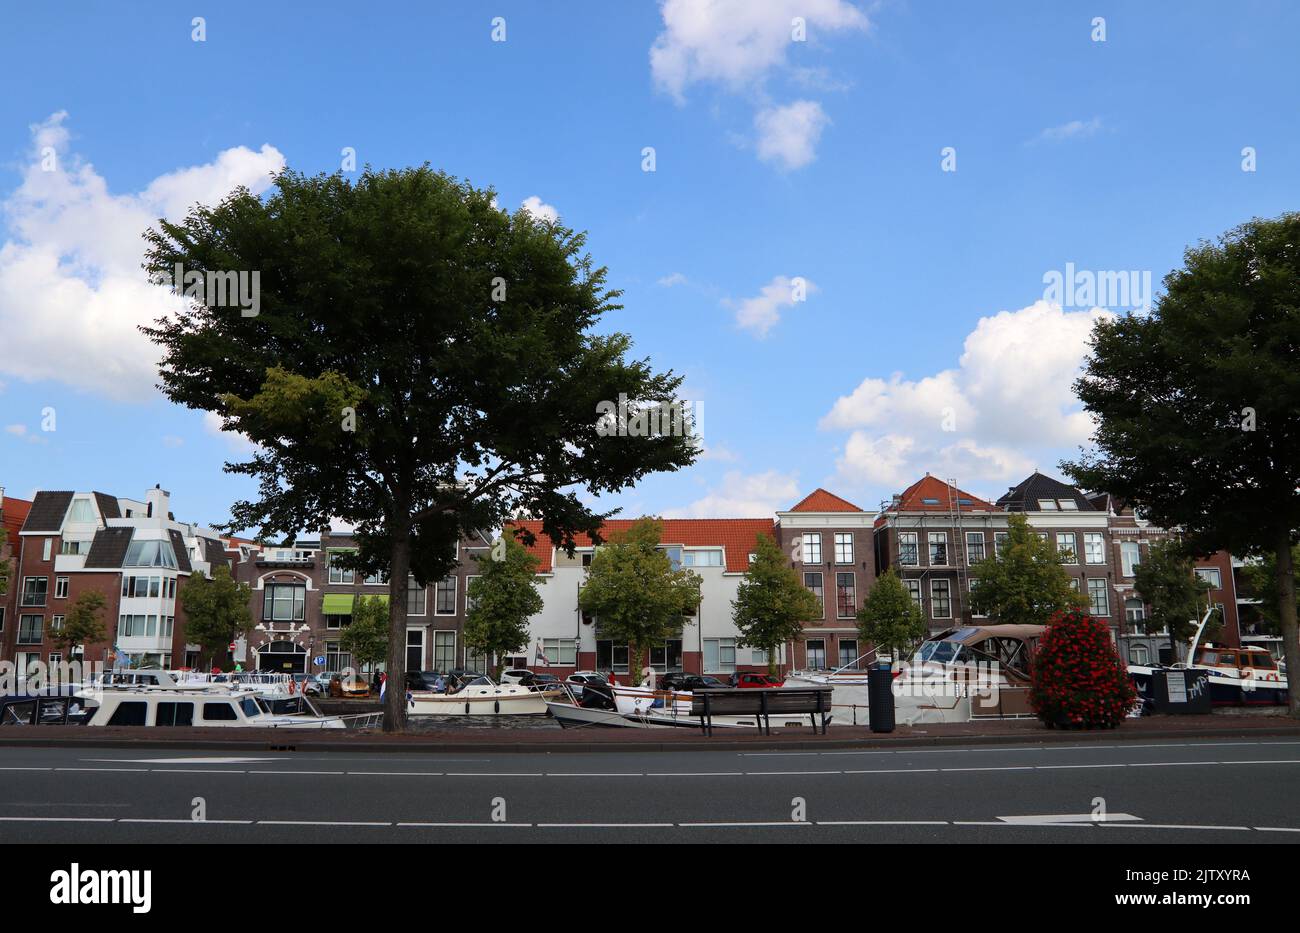 Wunderschöner Blick auf die holländische Stadt. Haarlem, Niederlande. Sommer in Europa. Holländische Architektur Foto. Stockfoto